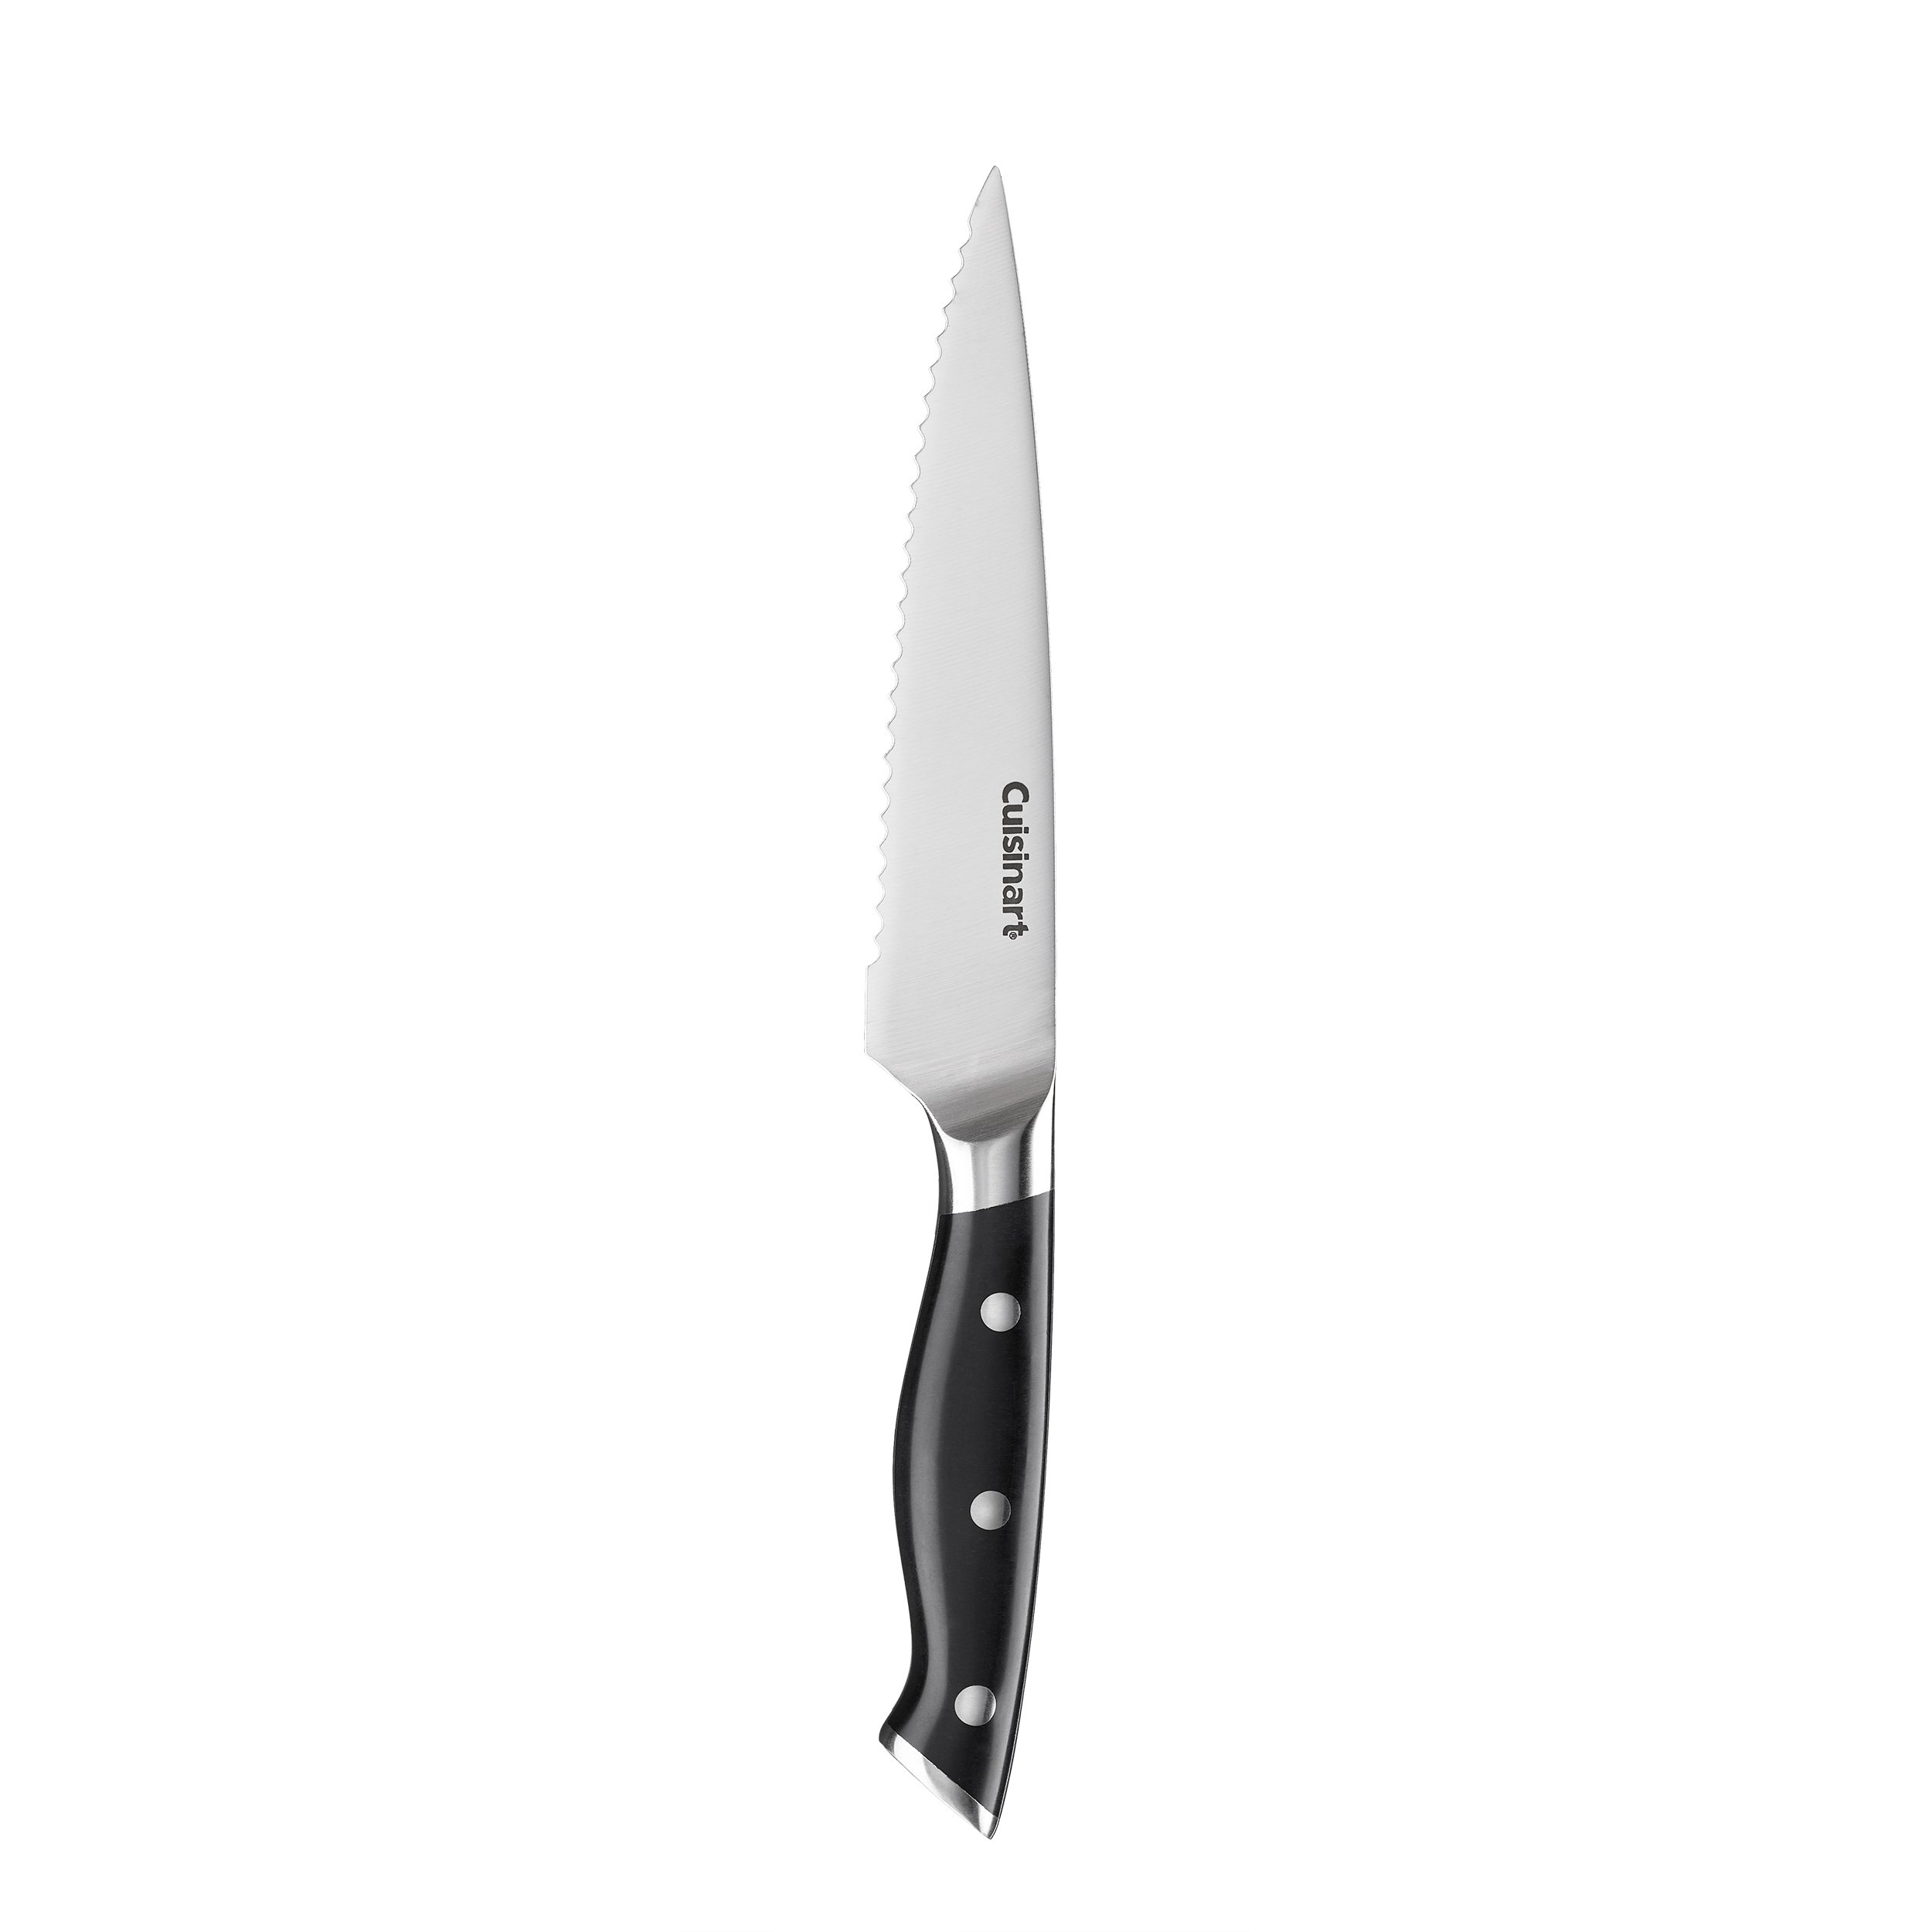 Cuisinart Classic 15pc White Triple Rivet Knife Block Set - C77WTR-15P2